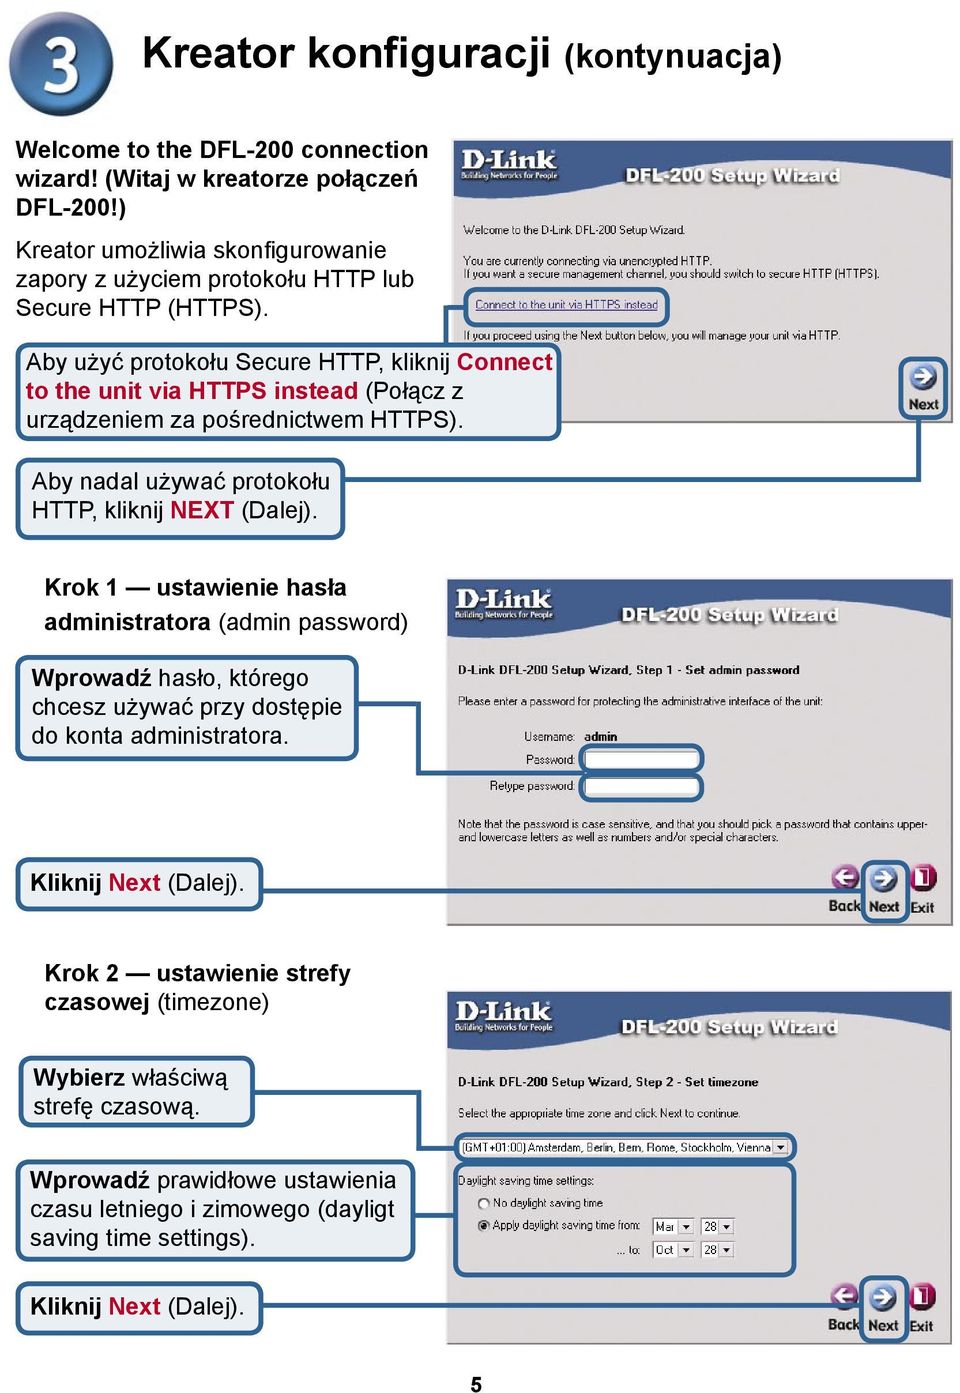 Aby użyć protokołu Secure HTTP, kliknij Connect to the unit via HTTPS instead (Połącz z urządzeniem za pośrednictwem HTTPS).